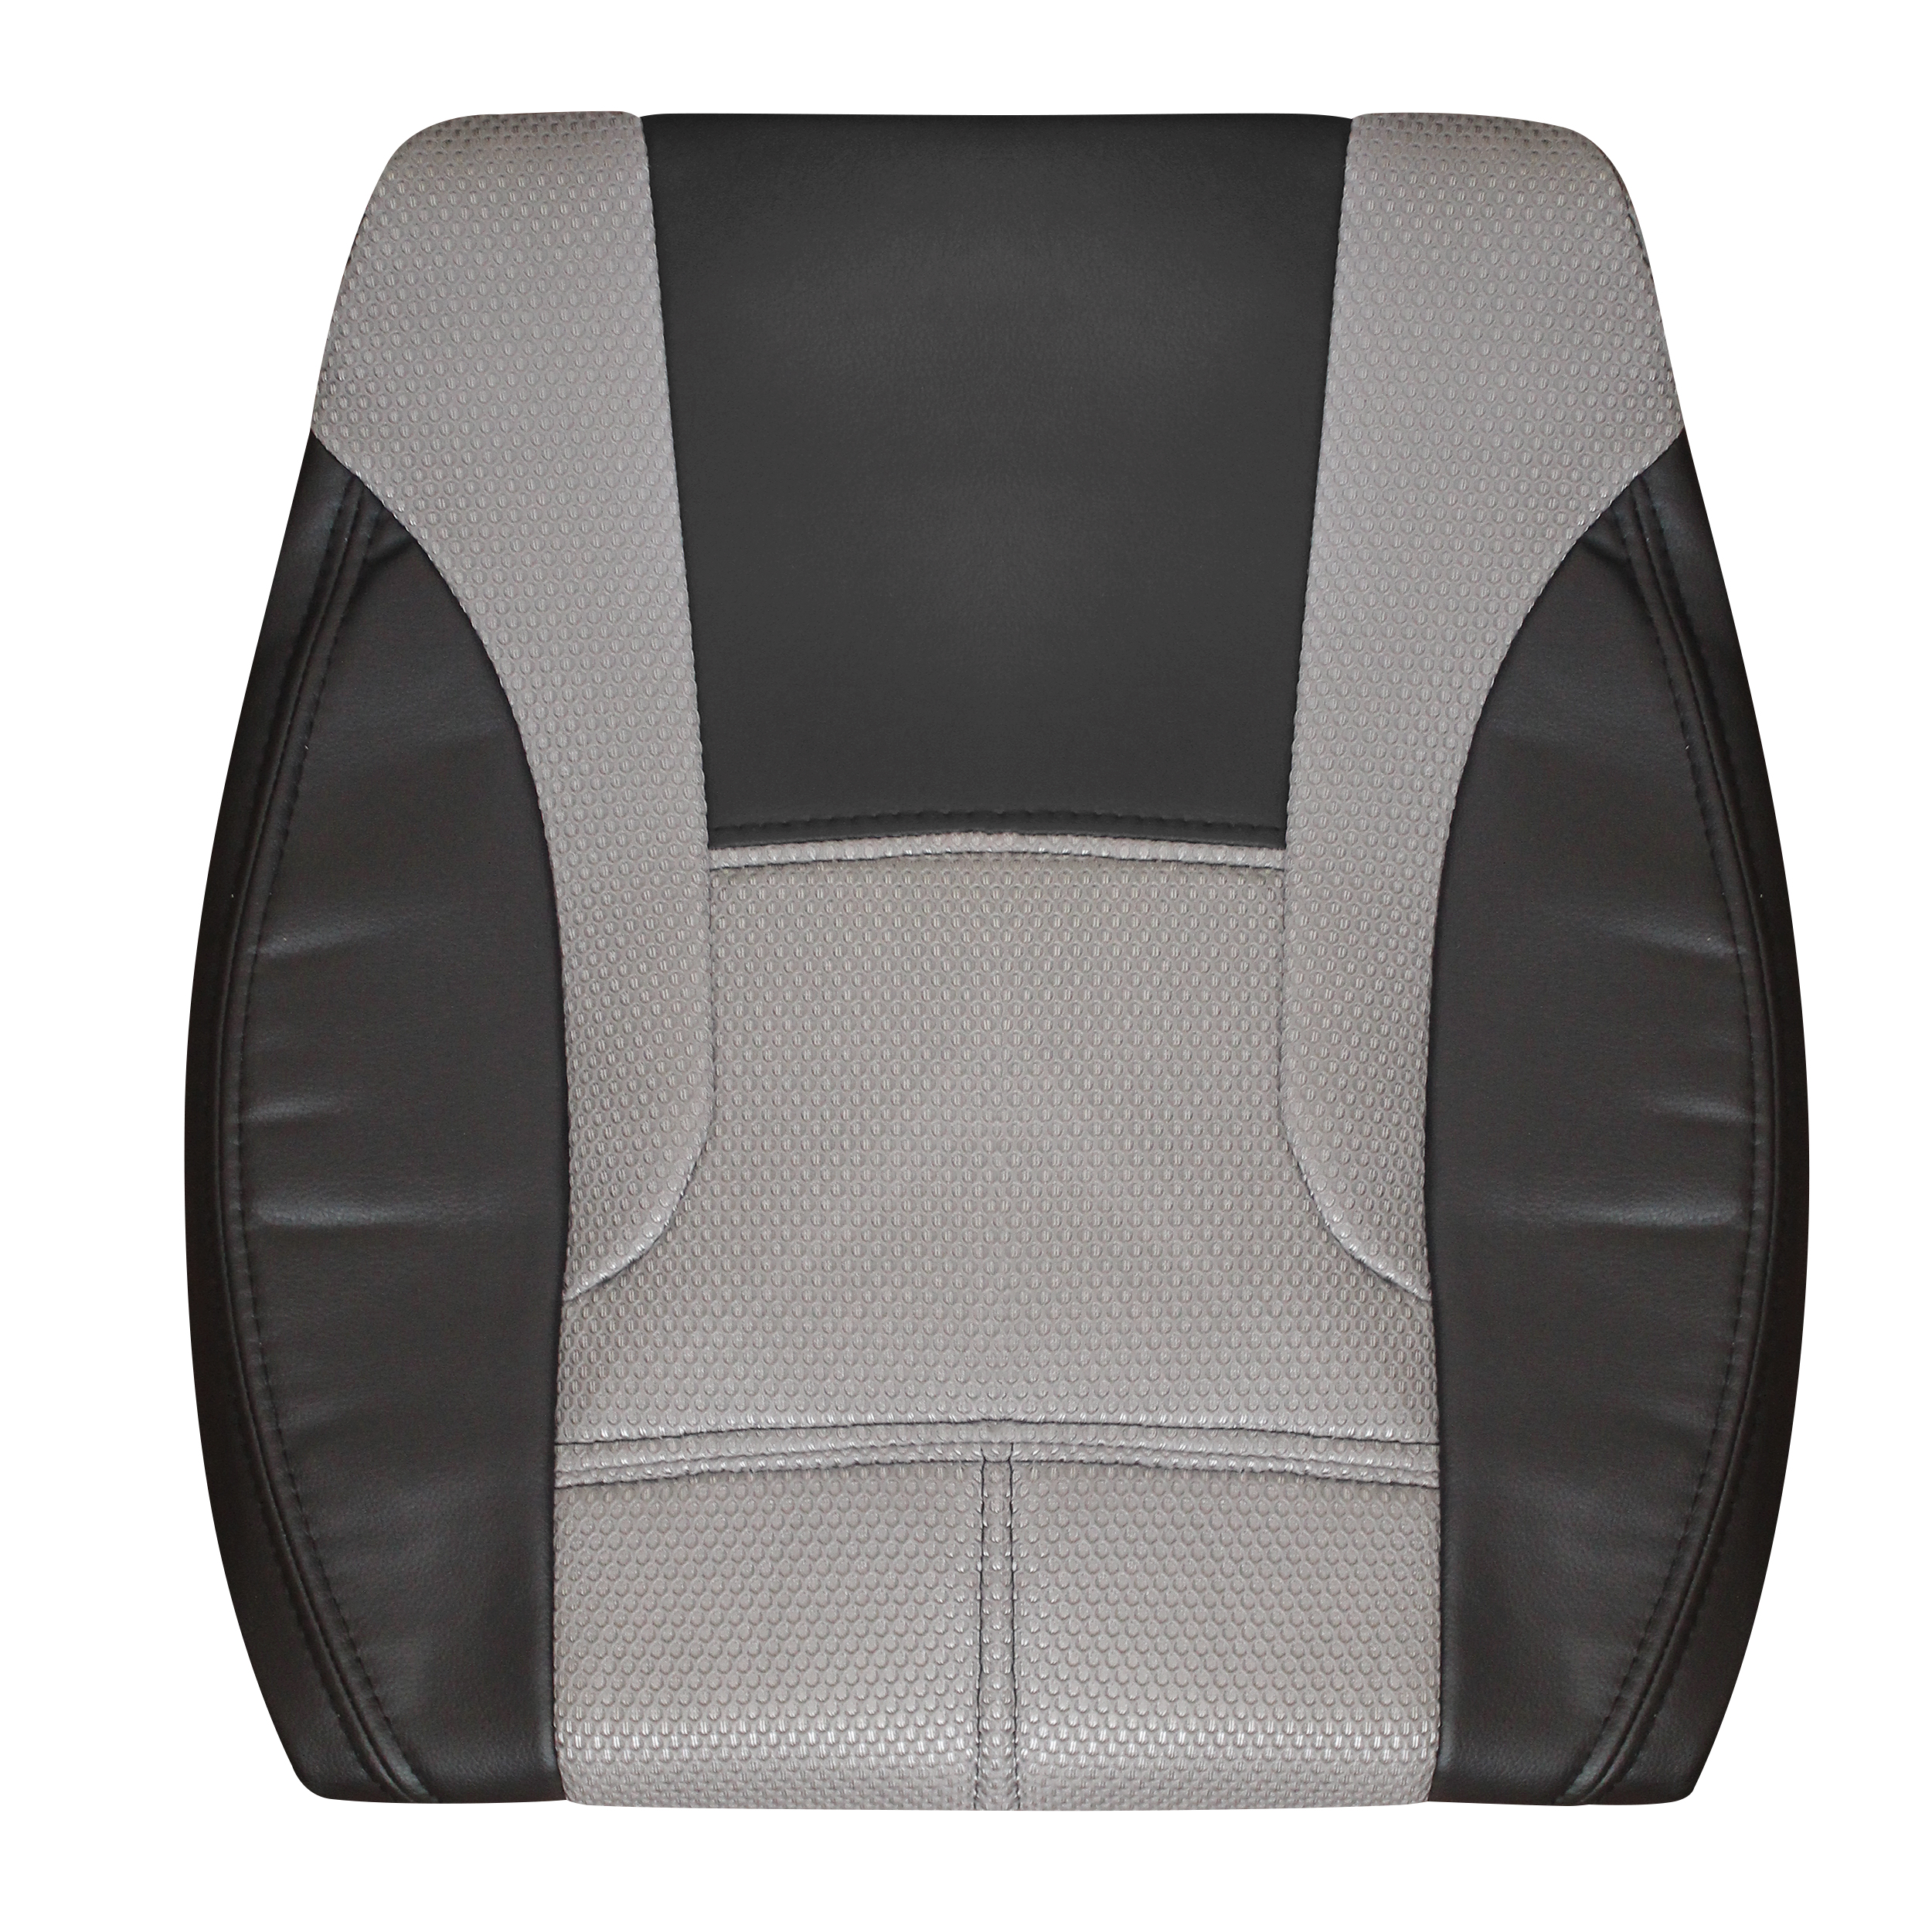 روکش صندلی خودرو مدل سایکو مناسب برای ساینا